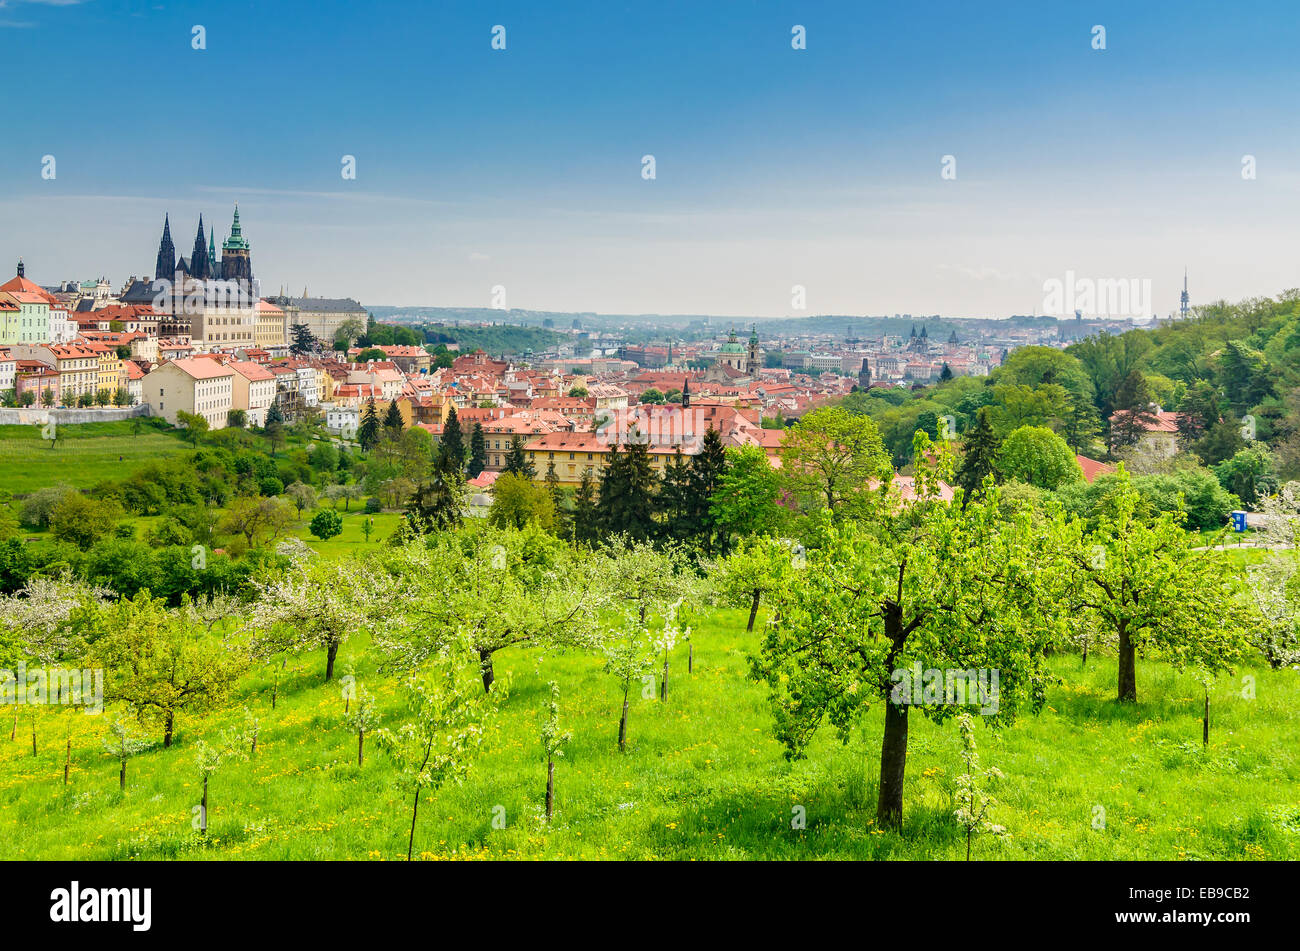 Vista panorámica de la catedral de San Vito de Praga y el Castillo de Praga, República Checa. Foto de stock